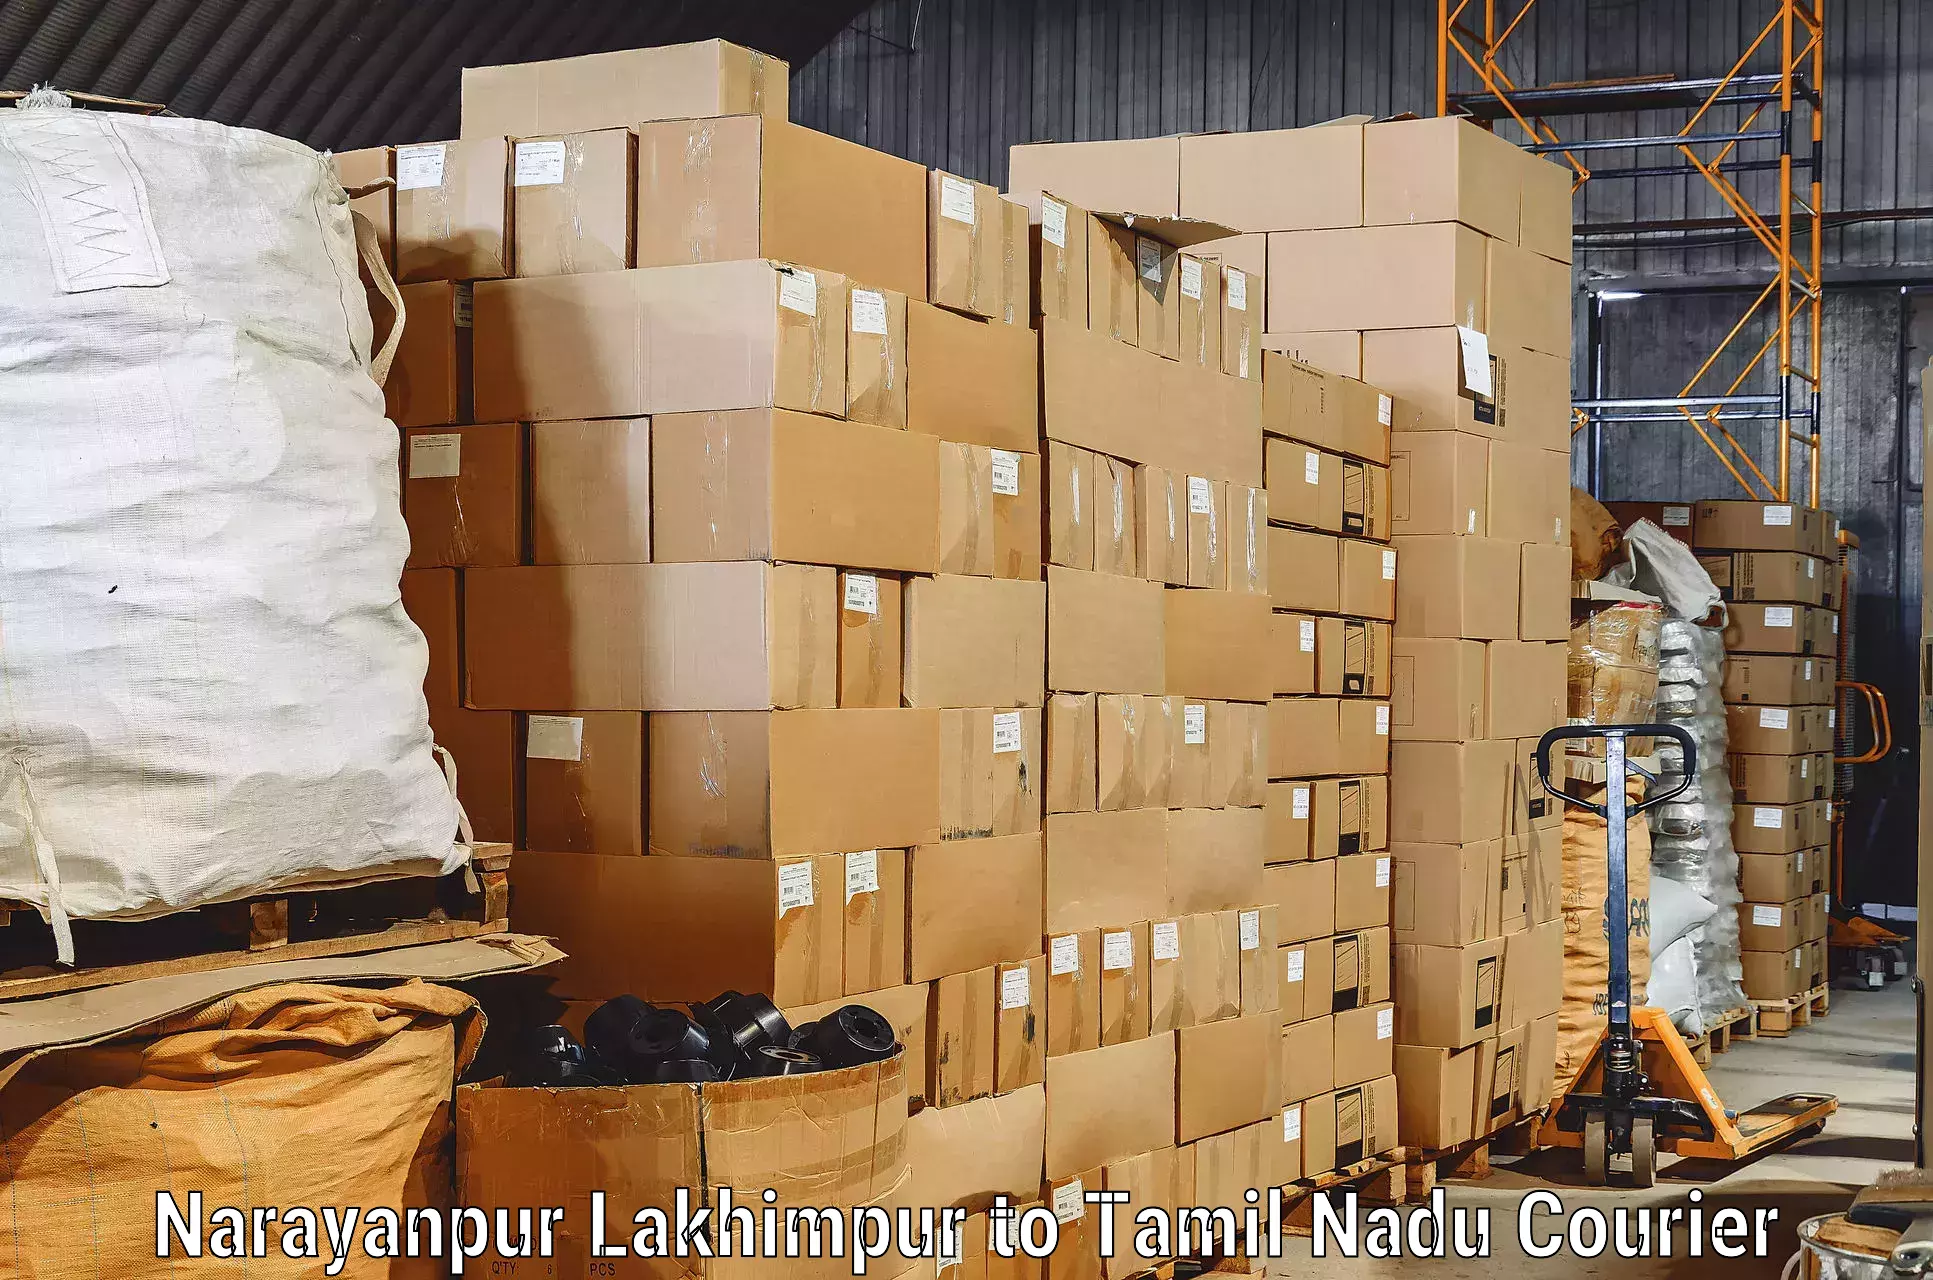 Furniture transport services Narayanpur Lakhimpur to Perambur